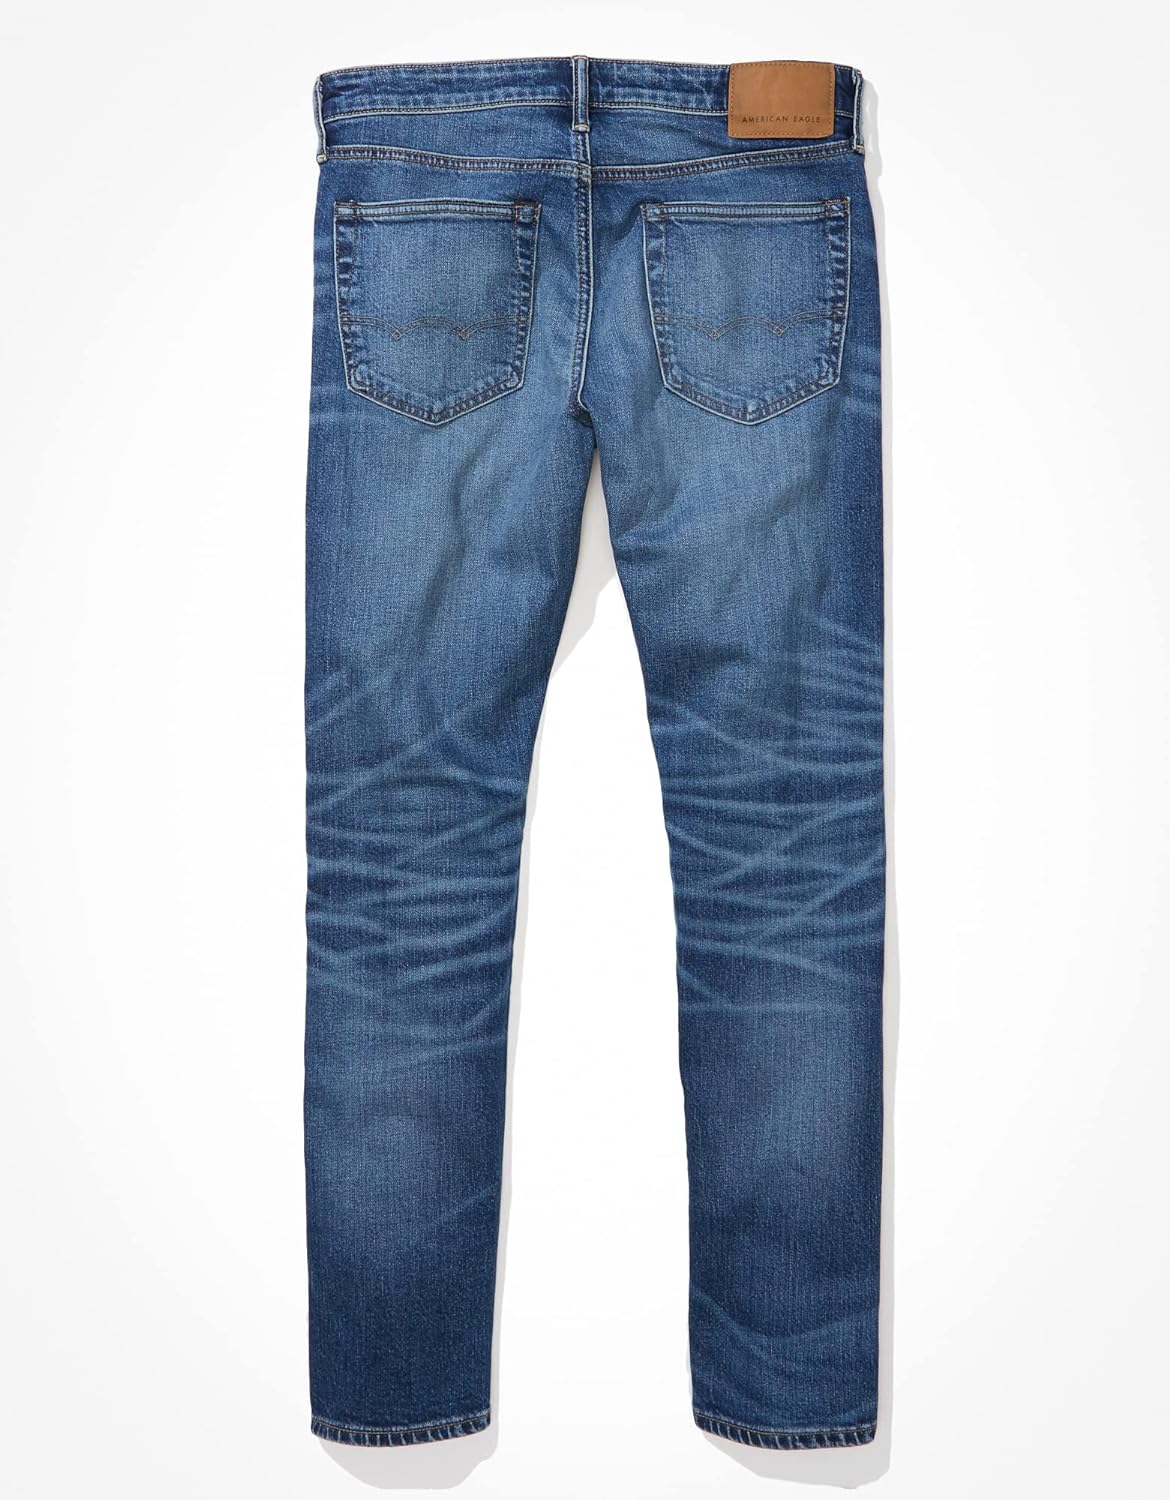 American Eagle Men's Flex Slim Straight Jean